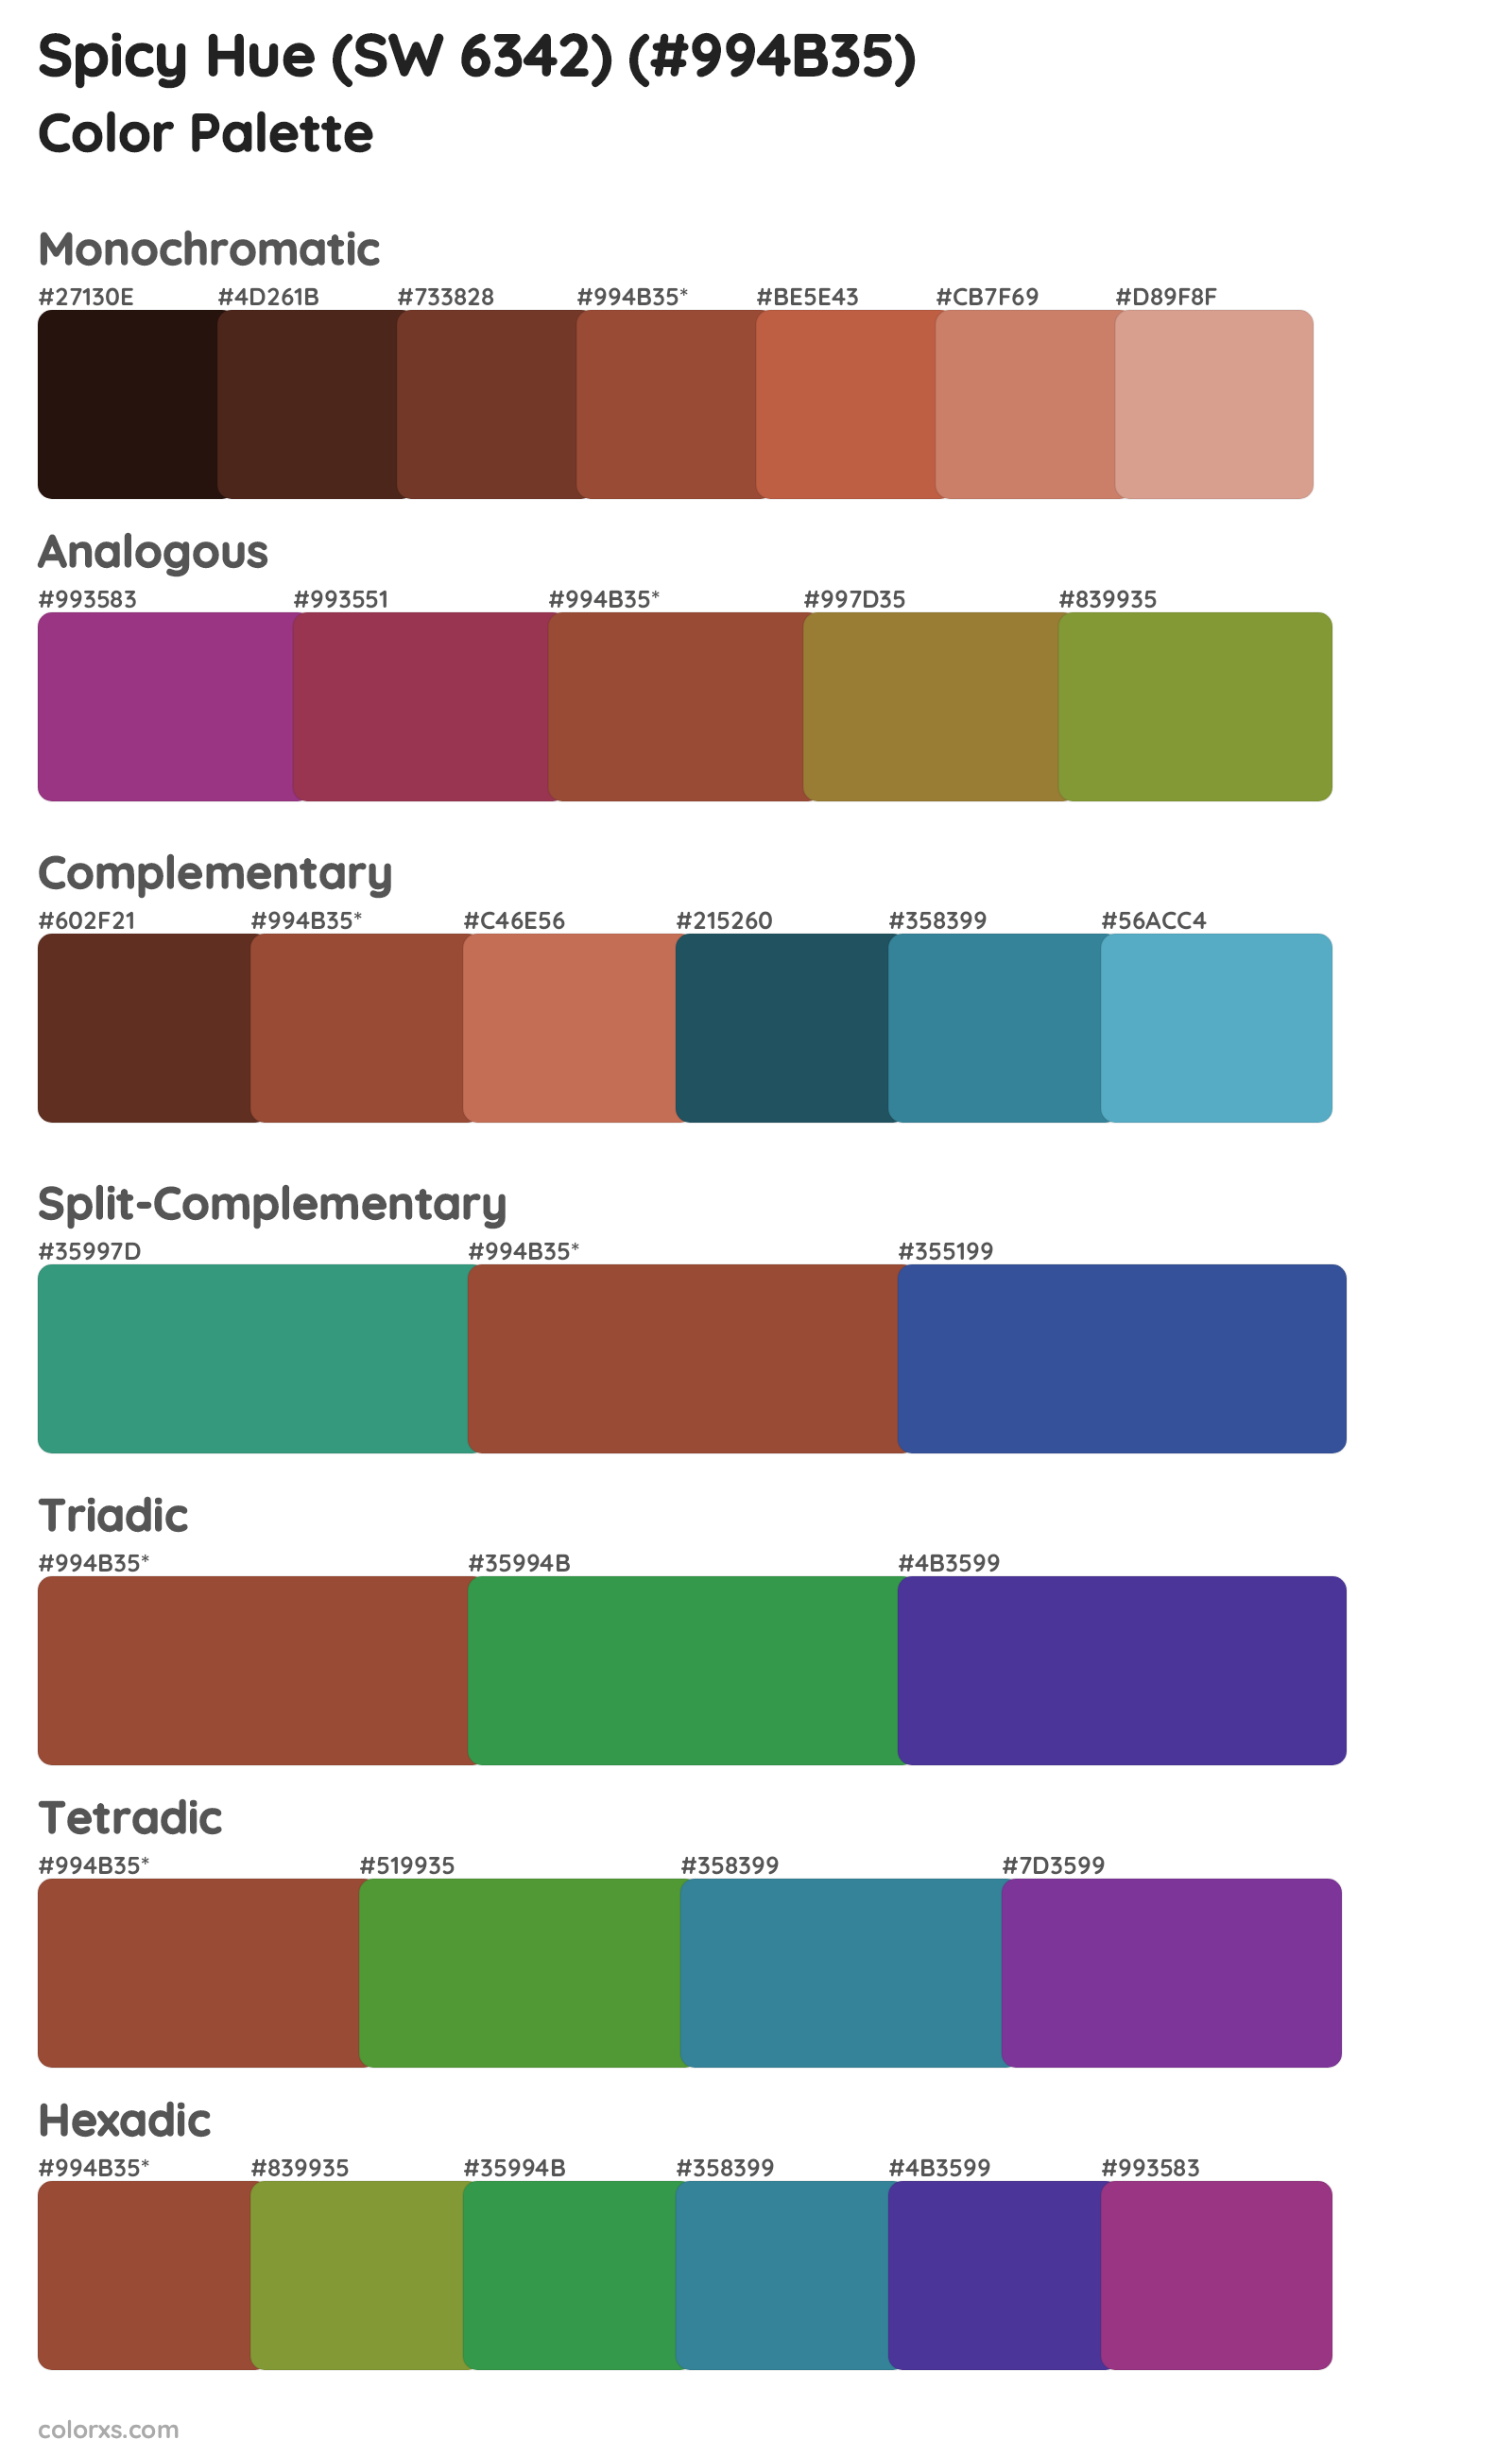 Spicy Hue (SW 6342) Color Scheme Palettes